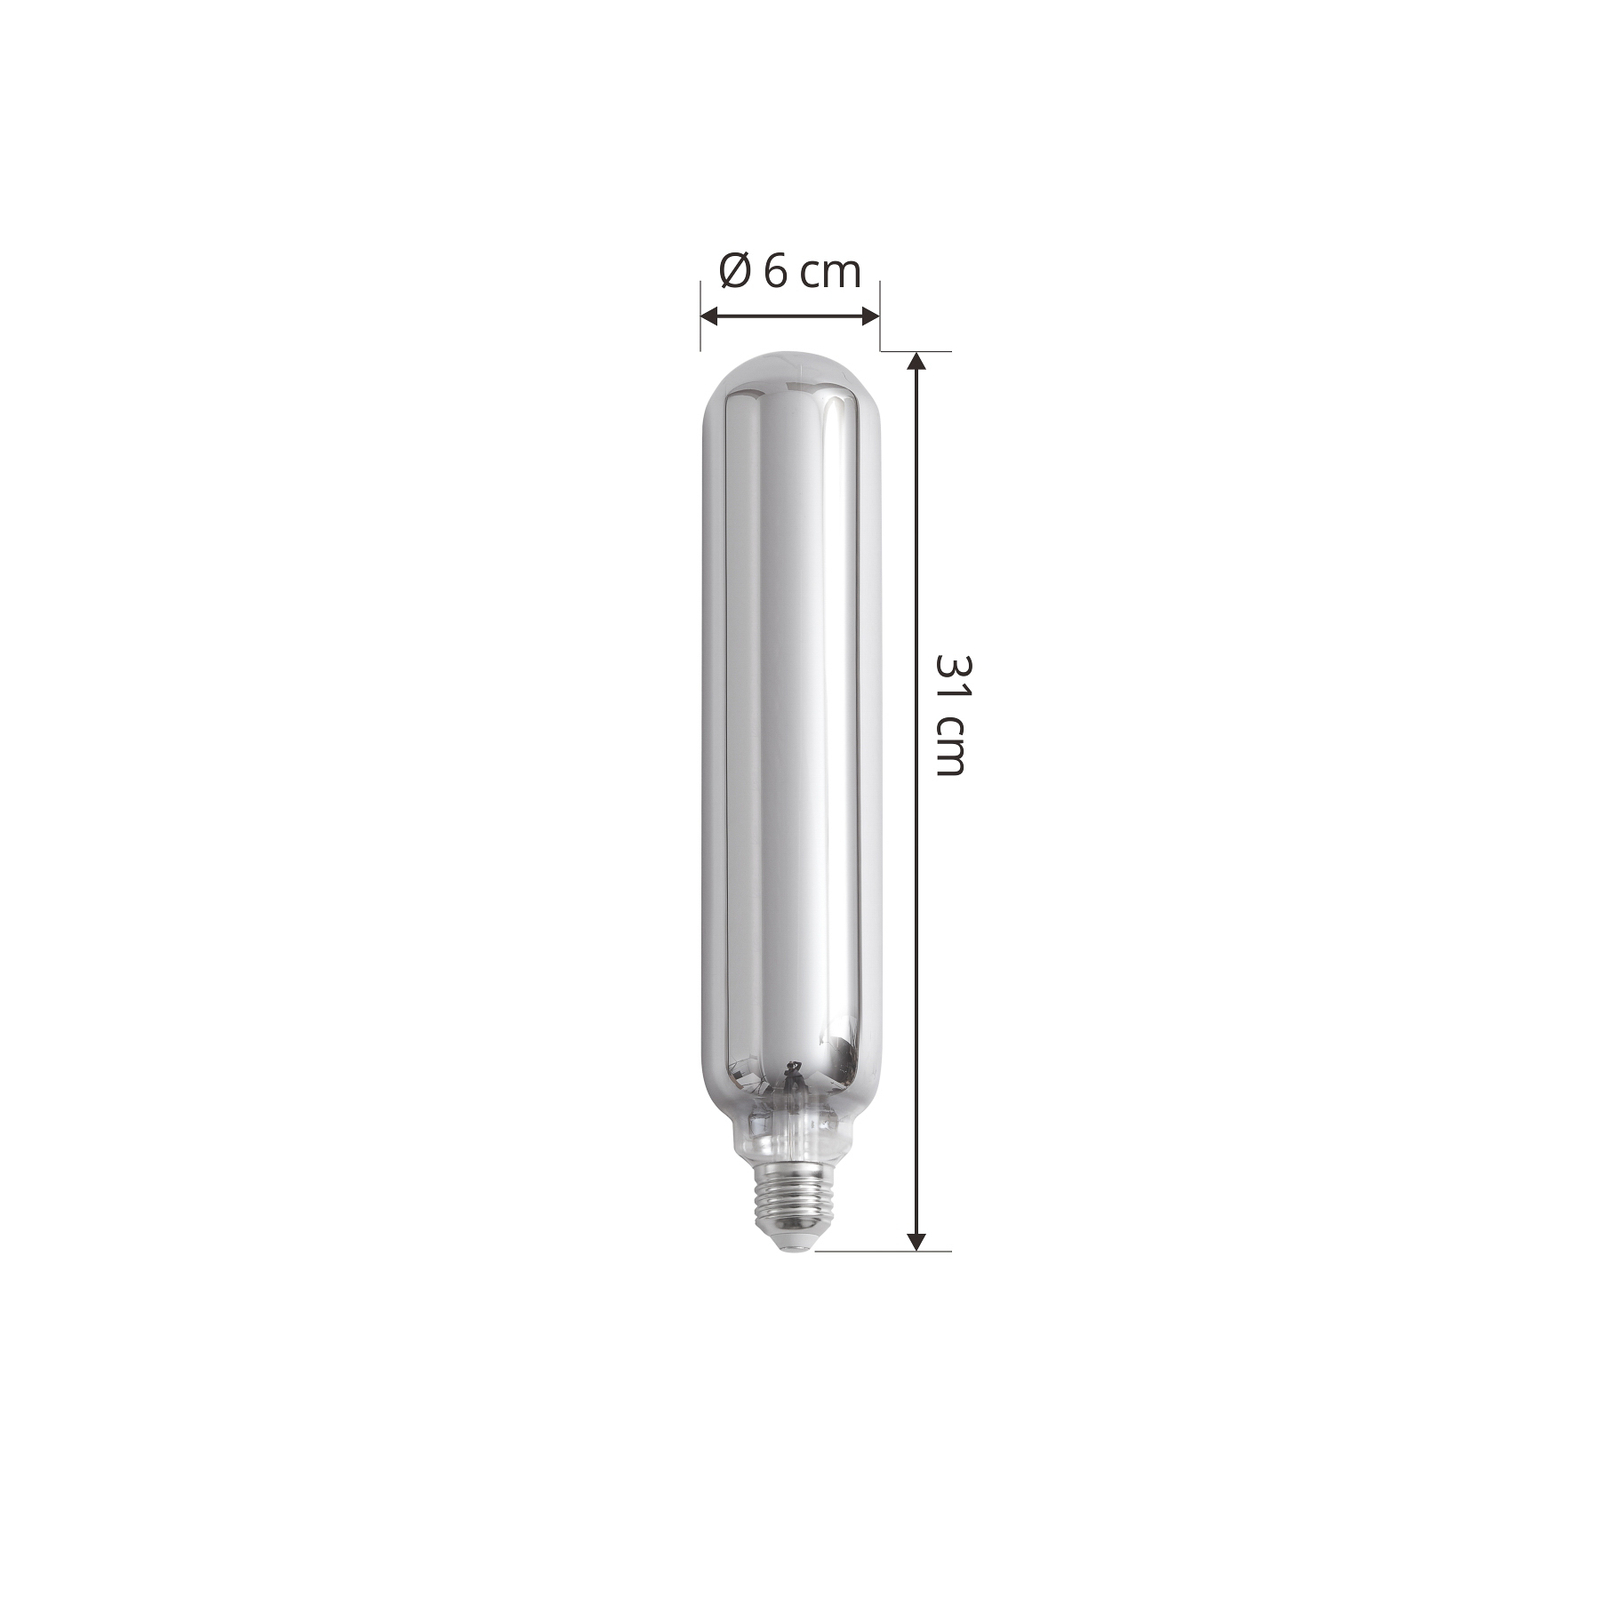 Lucande LED žárovka E27 Ø 6cm 4W 1800K titanium